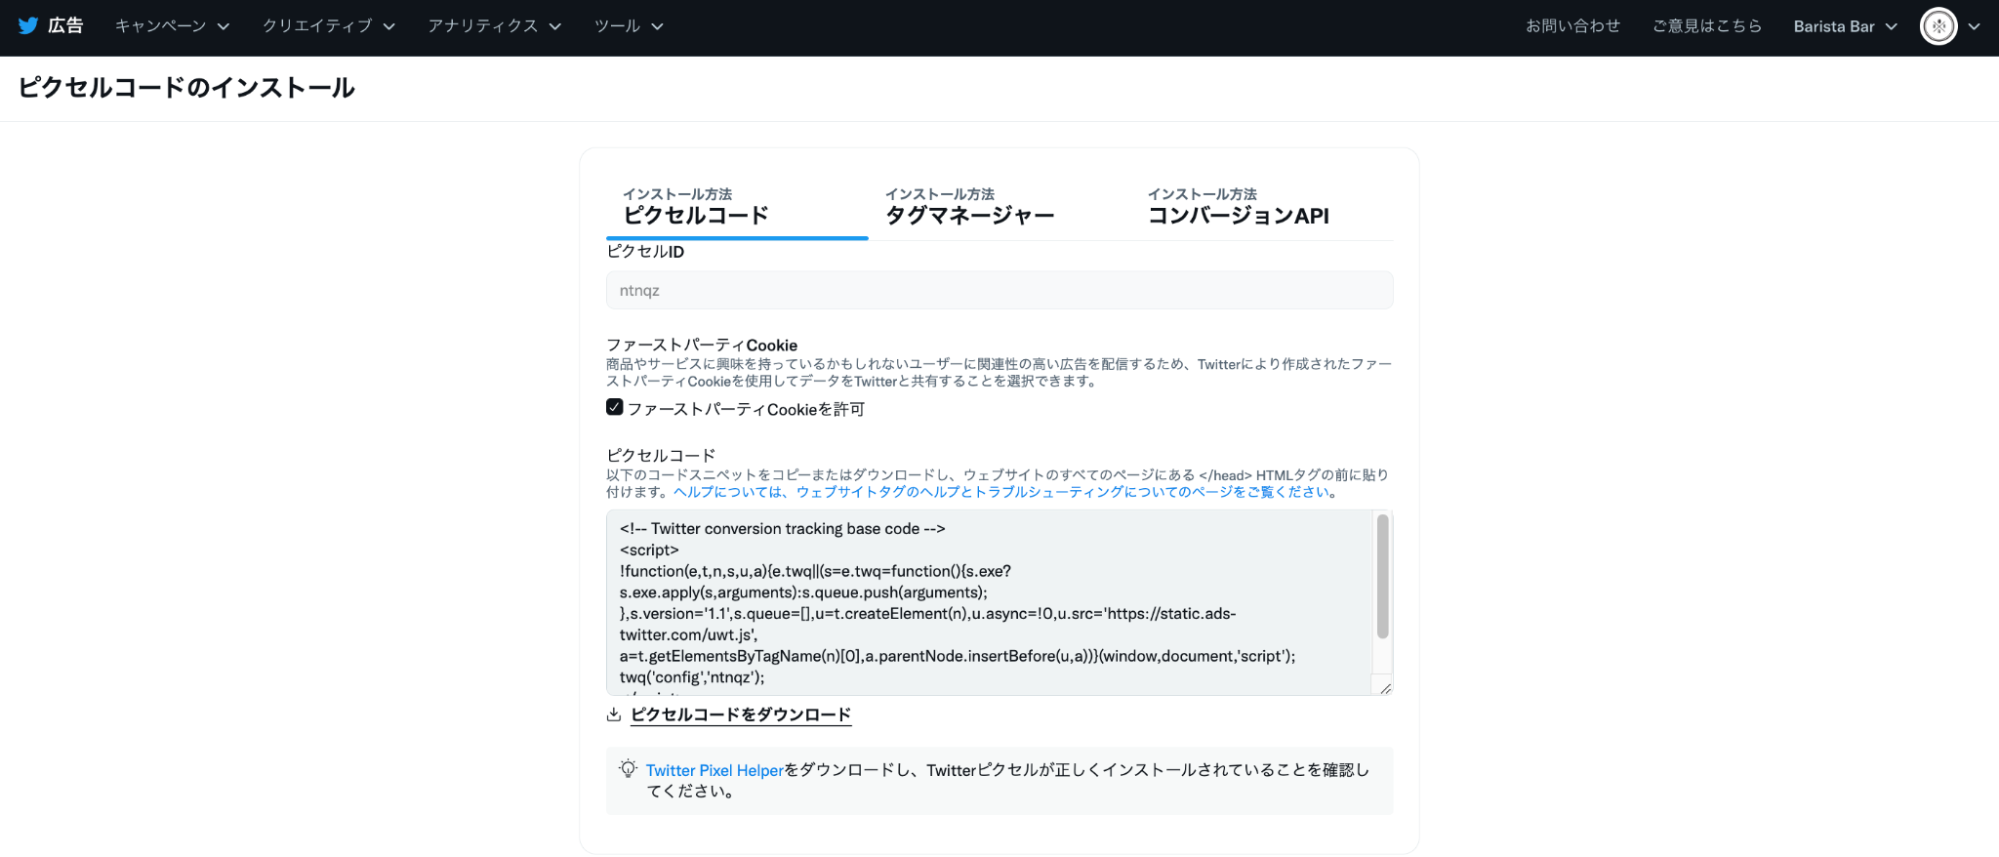 Twitter Japan、コンバージョン計測などのパフォーマンス広告測定機能の強化を発表